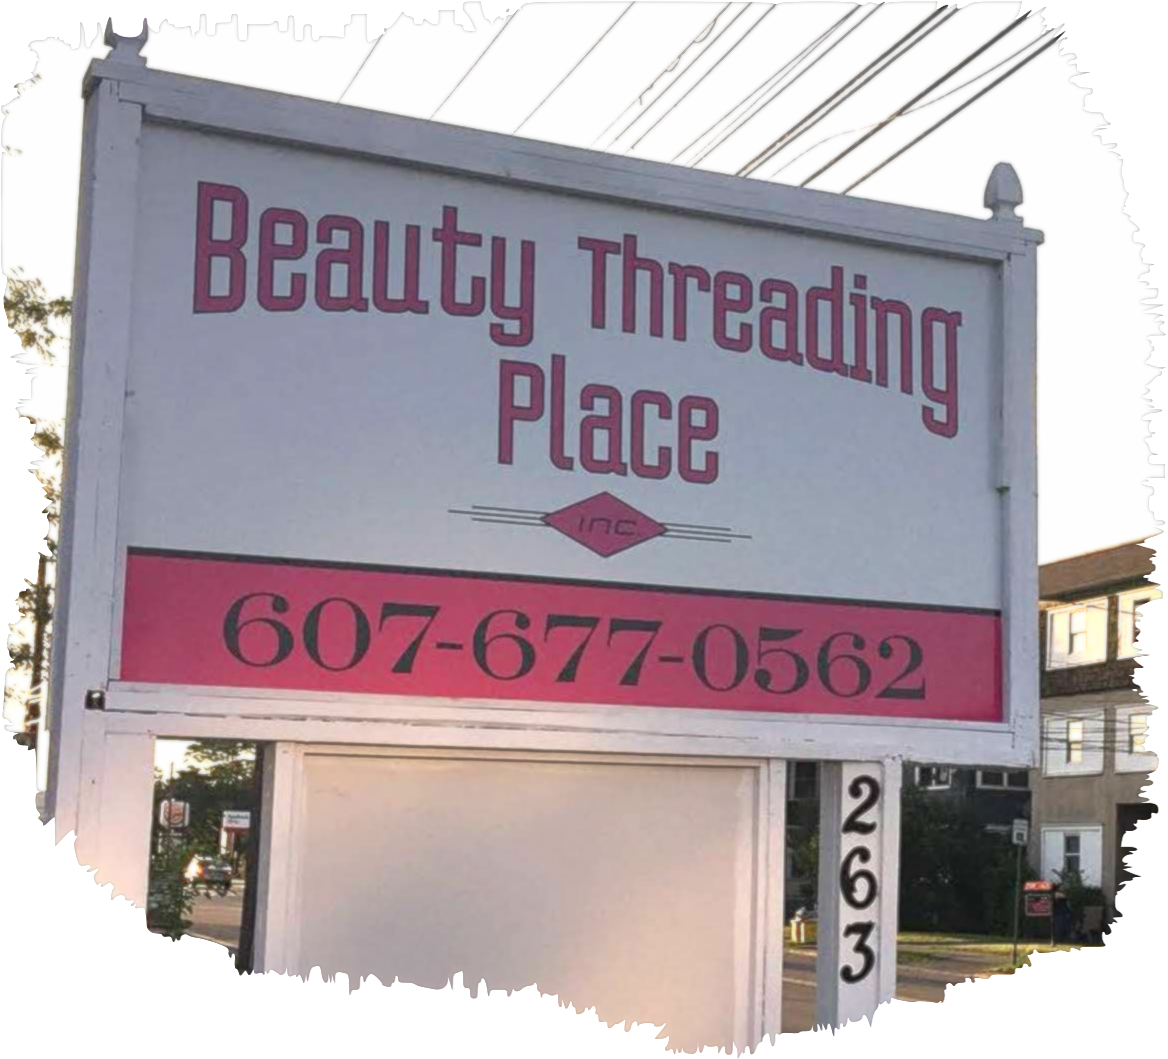 Beauty Threading Palace Inc